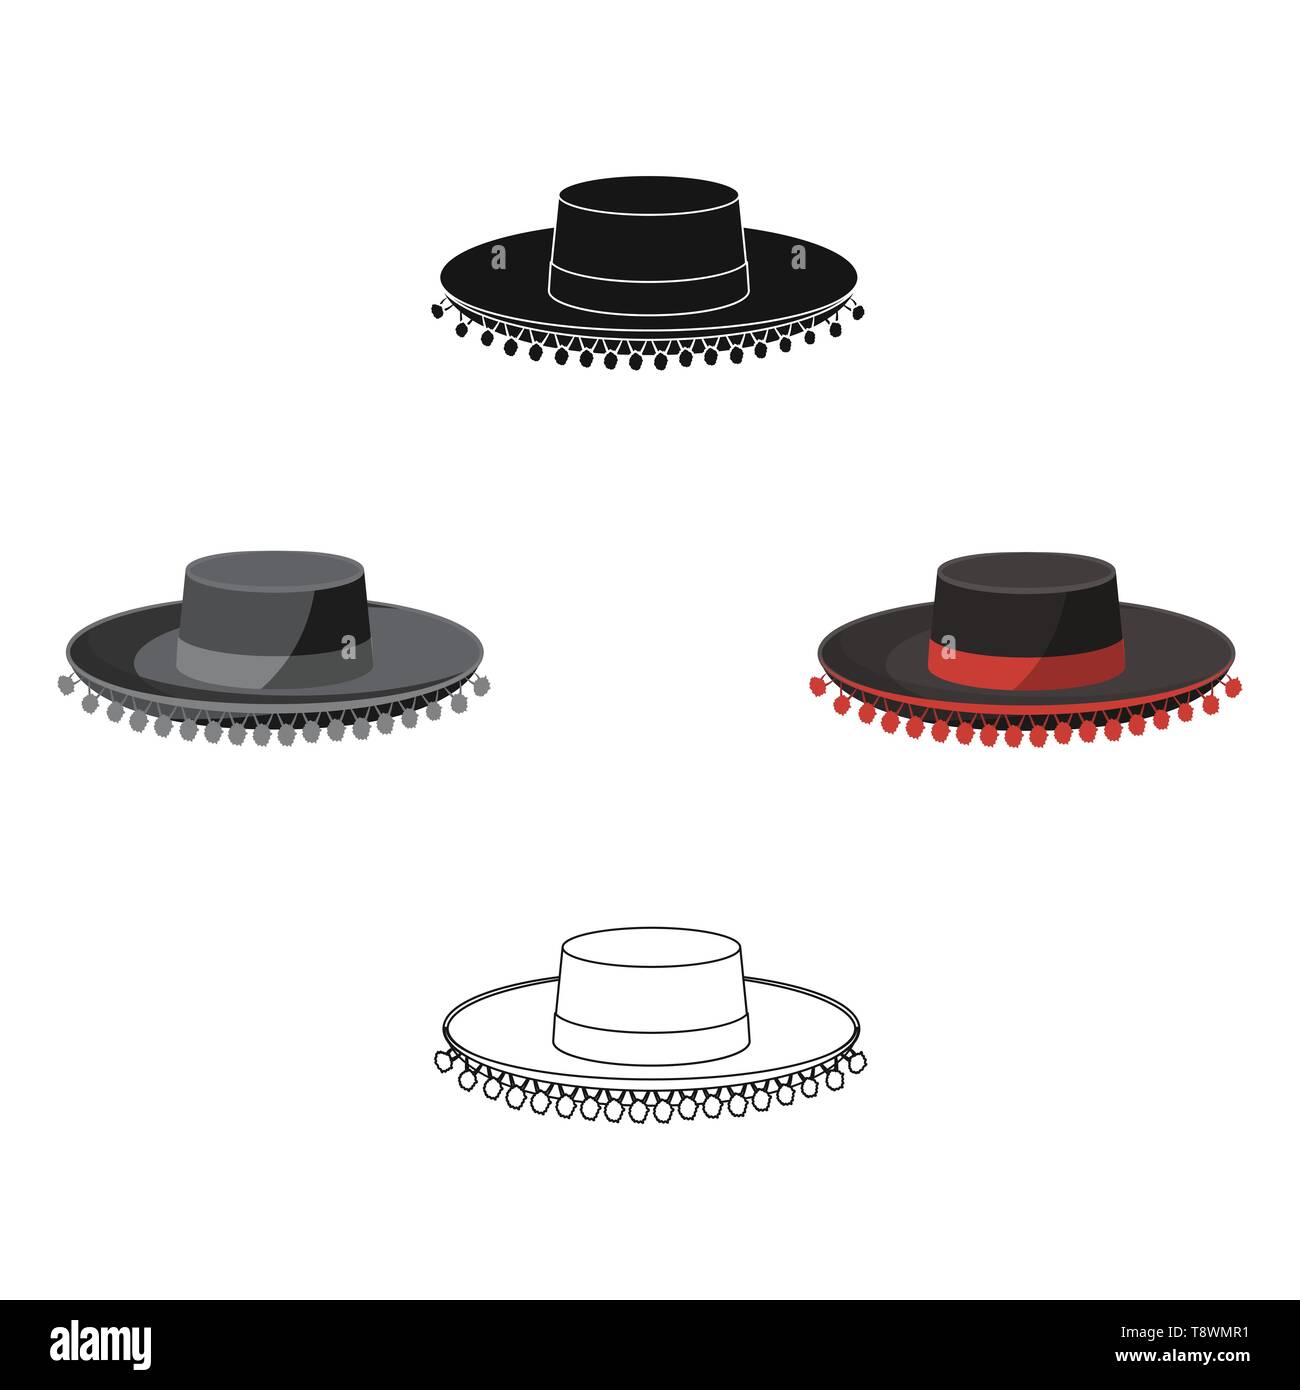 Sombrero cordobes Stock Vector Images - Alamy